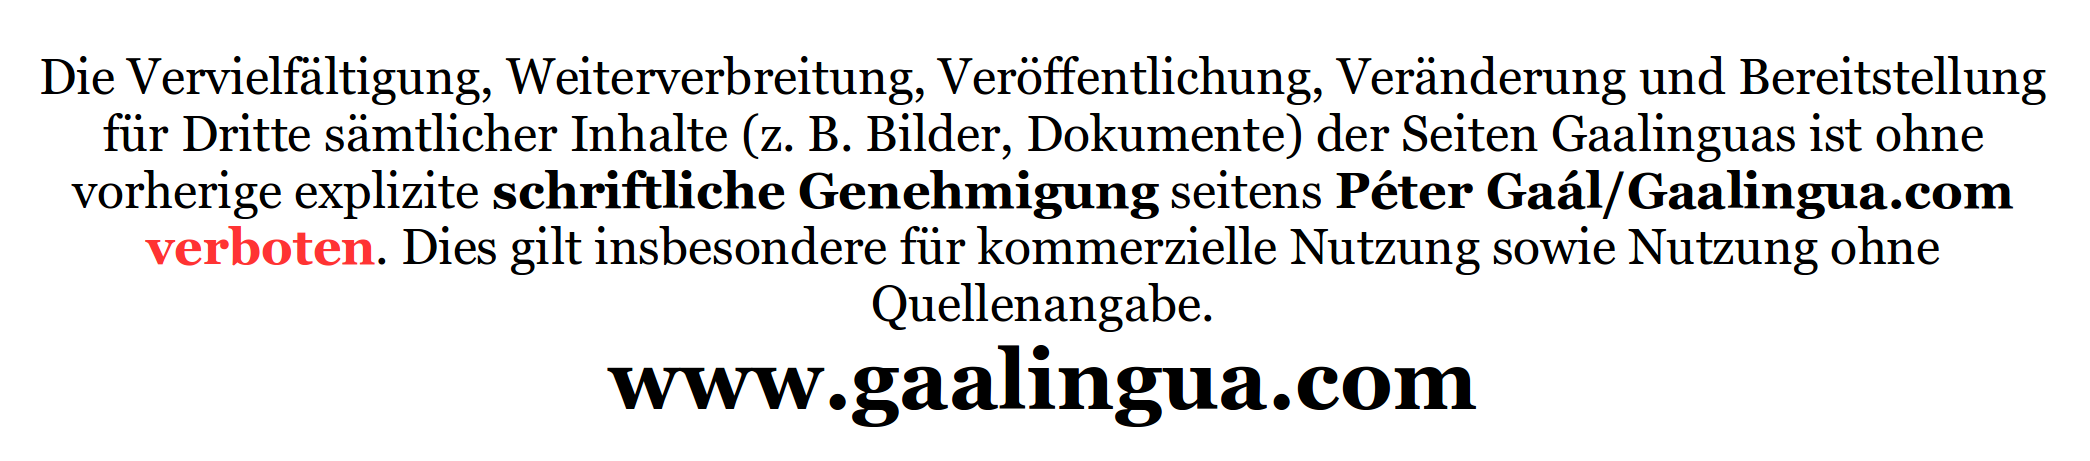 Gaalingua.com Gaalingua Sprachen & Bildung